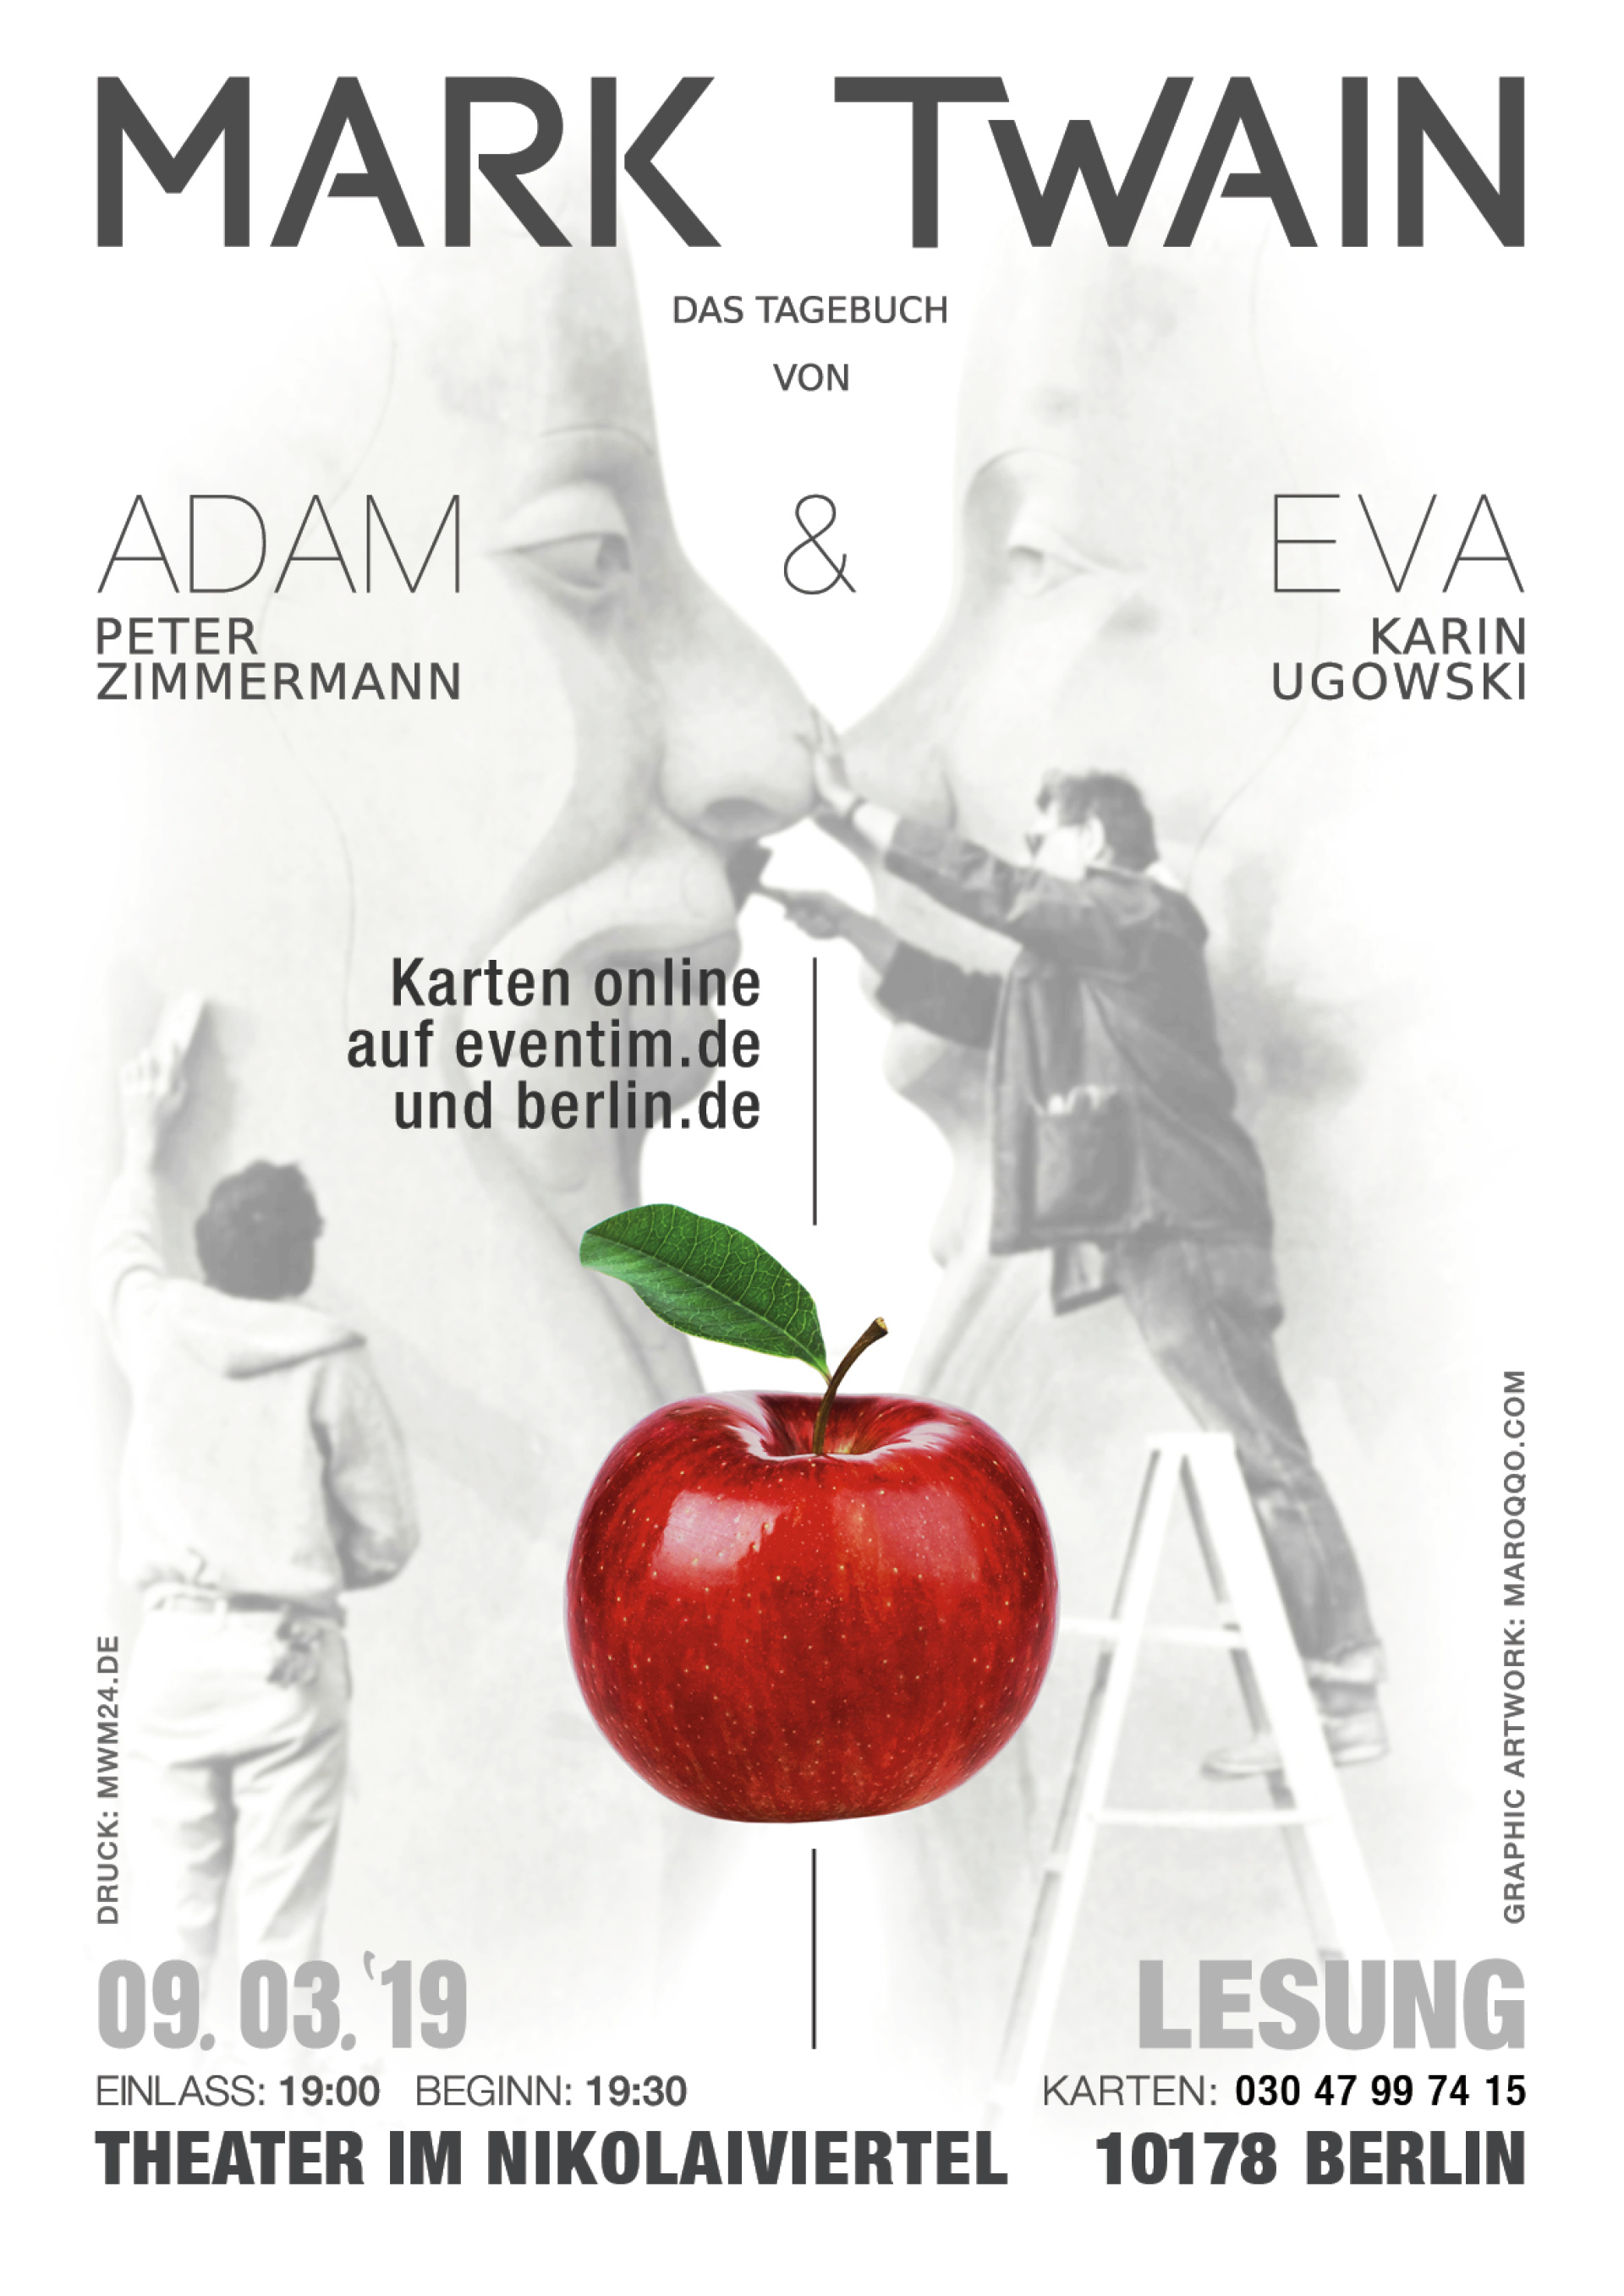 Abbildung von Poster - Lesung Mark Twain mit Karin Ugowski und Peter Zimmermann 2019